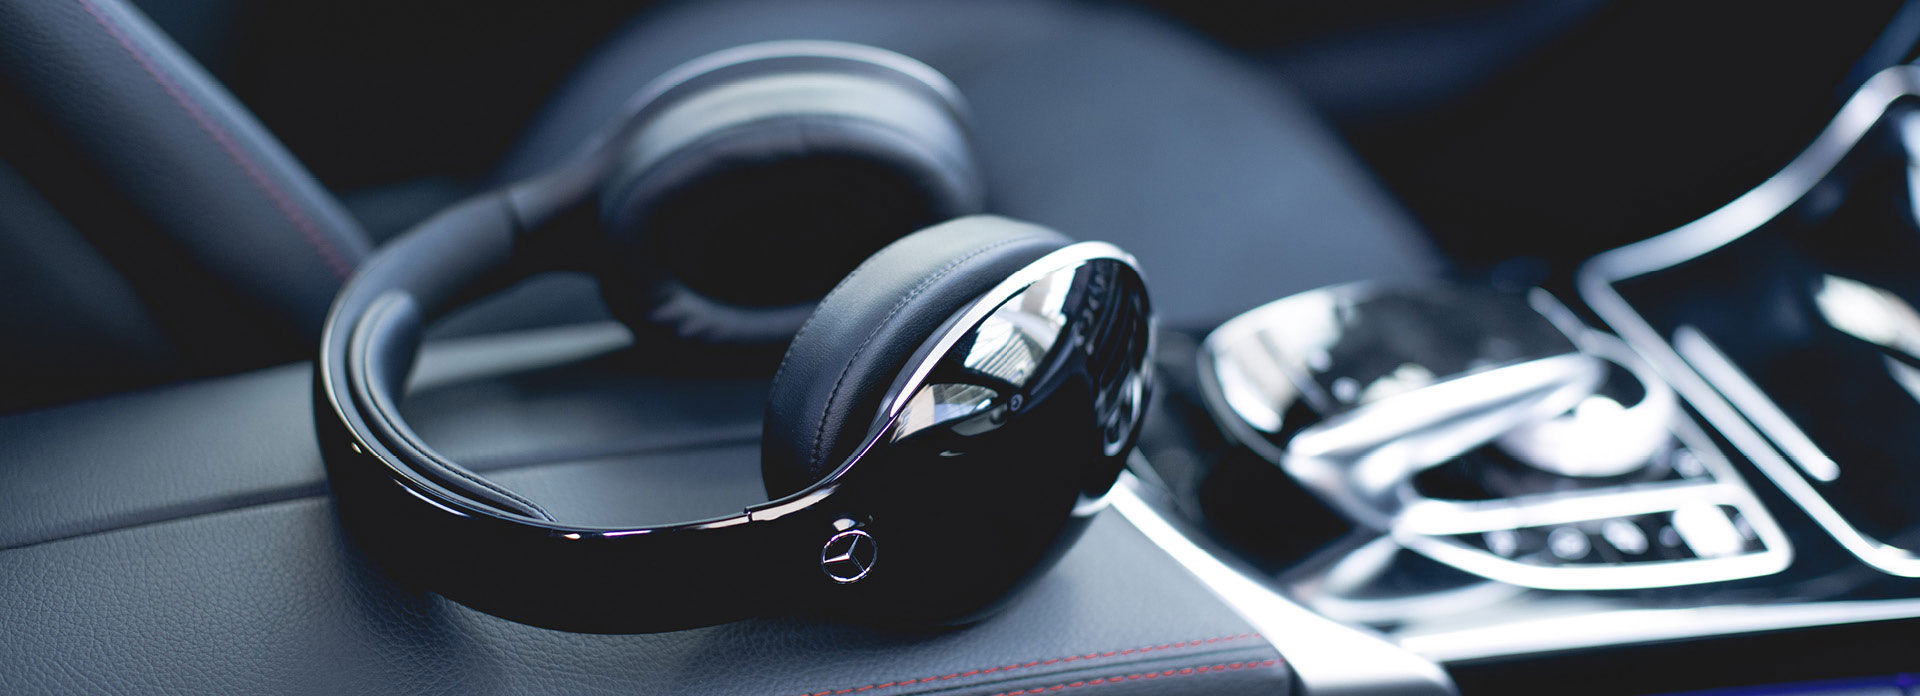 Sichern Sie sich jetzt die Mercedes-Benz Wireless Headphones bei Schmolck. Erleben Sie Musik in Qualität und Zeichen des Sterns.